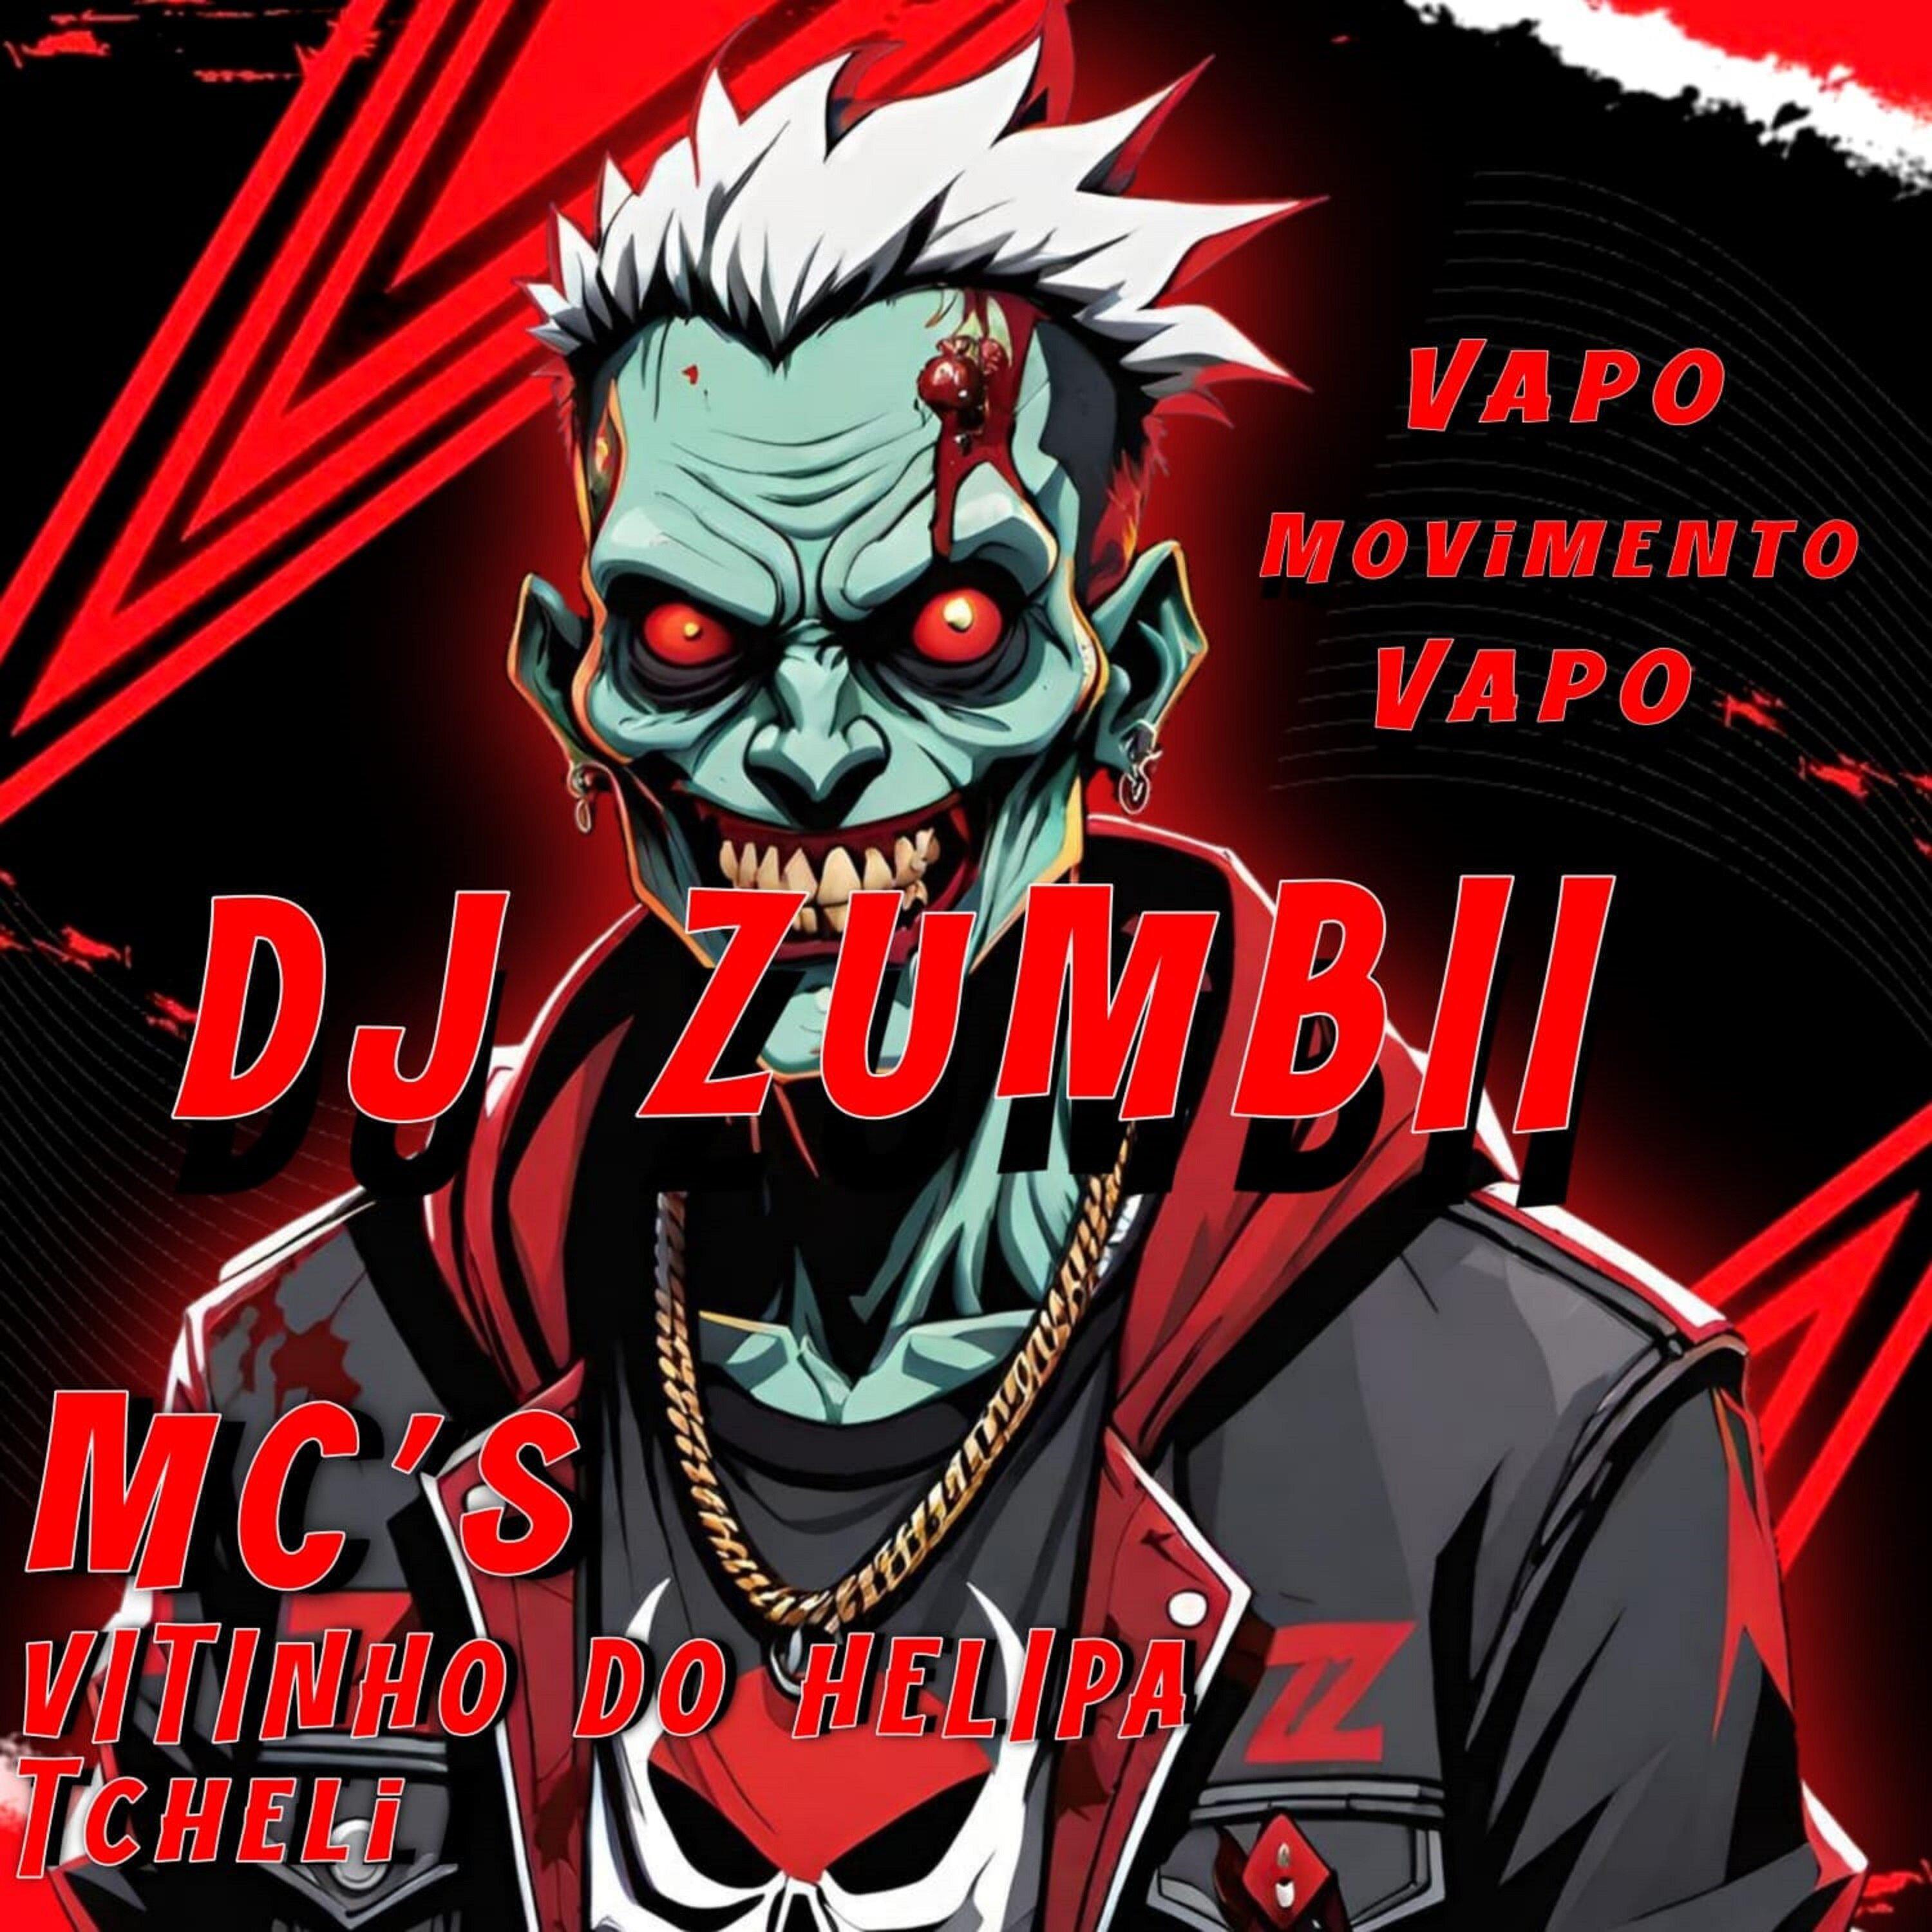 DJ ZUMBII - Movimento Vapo Vapo